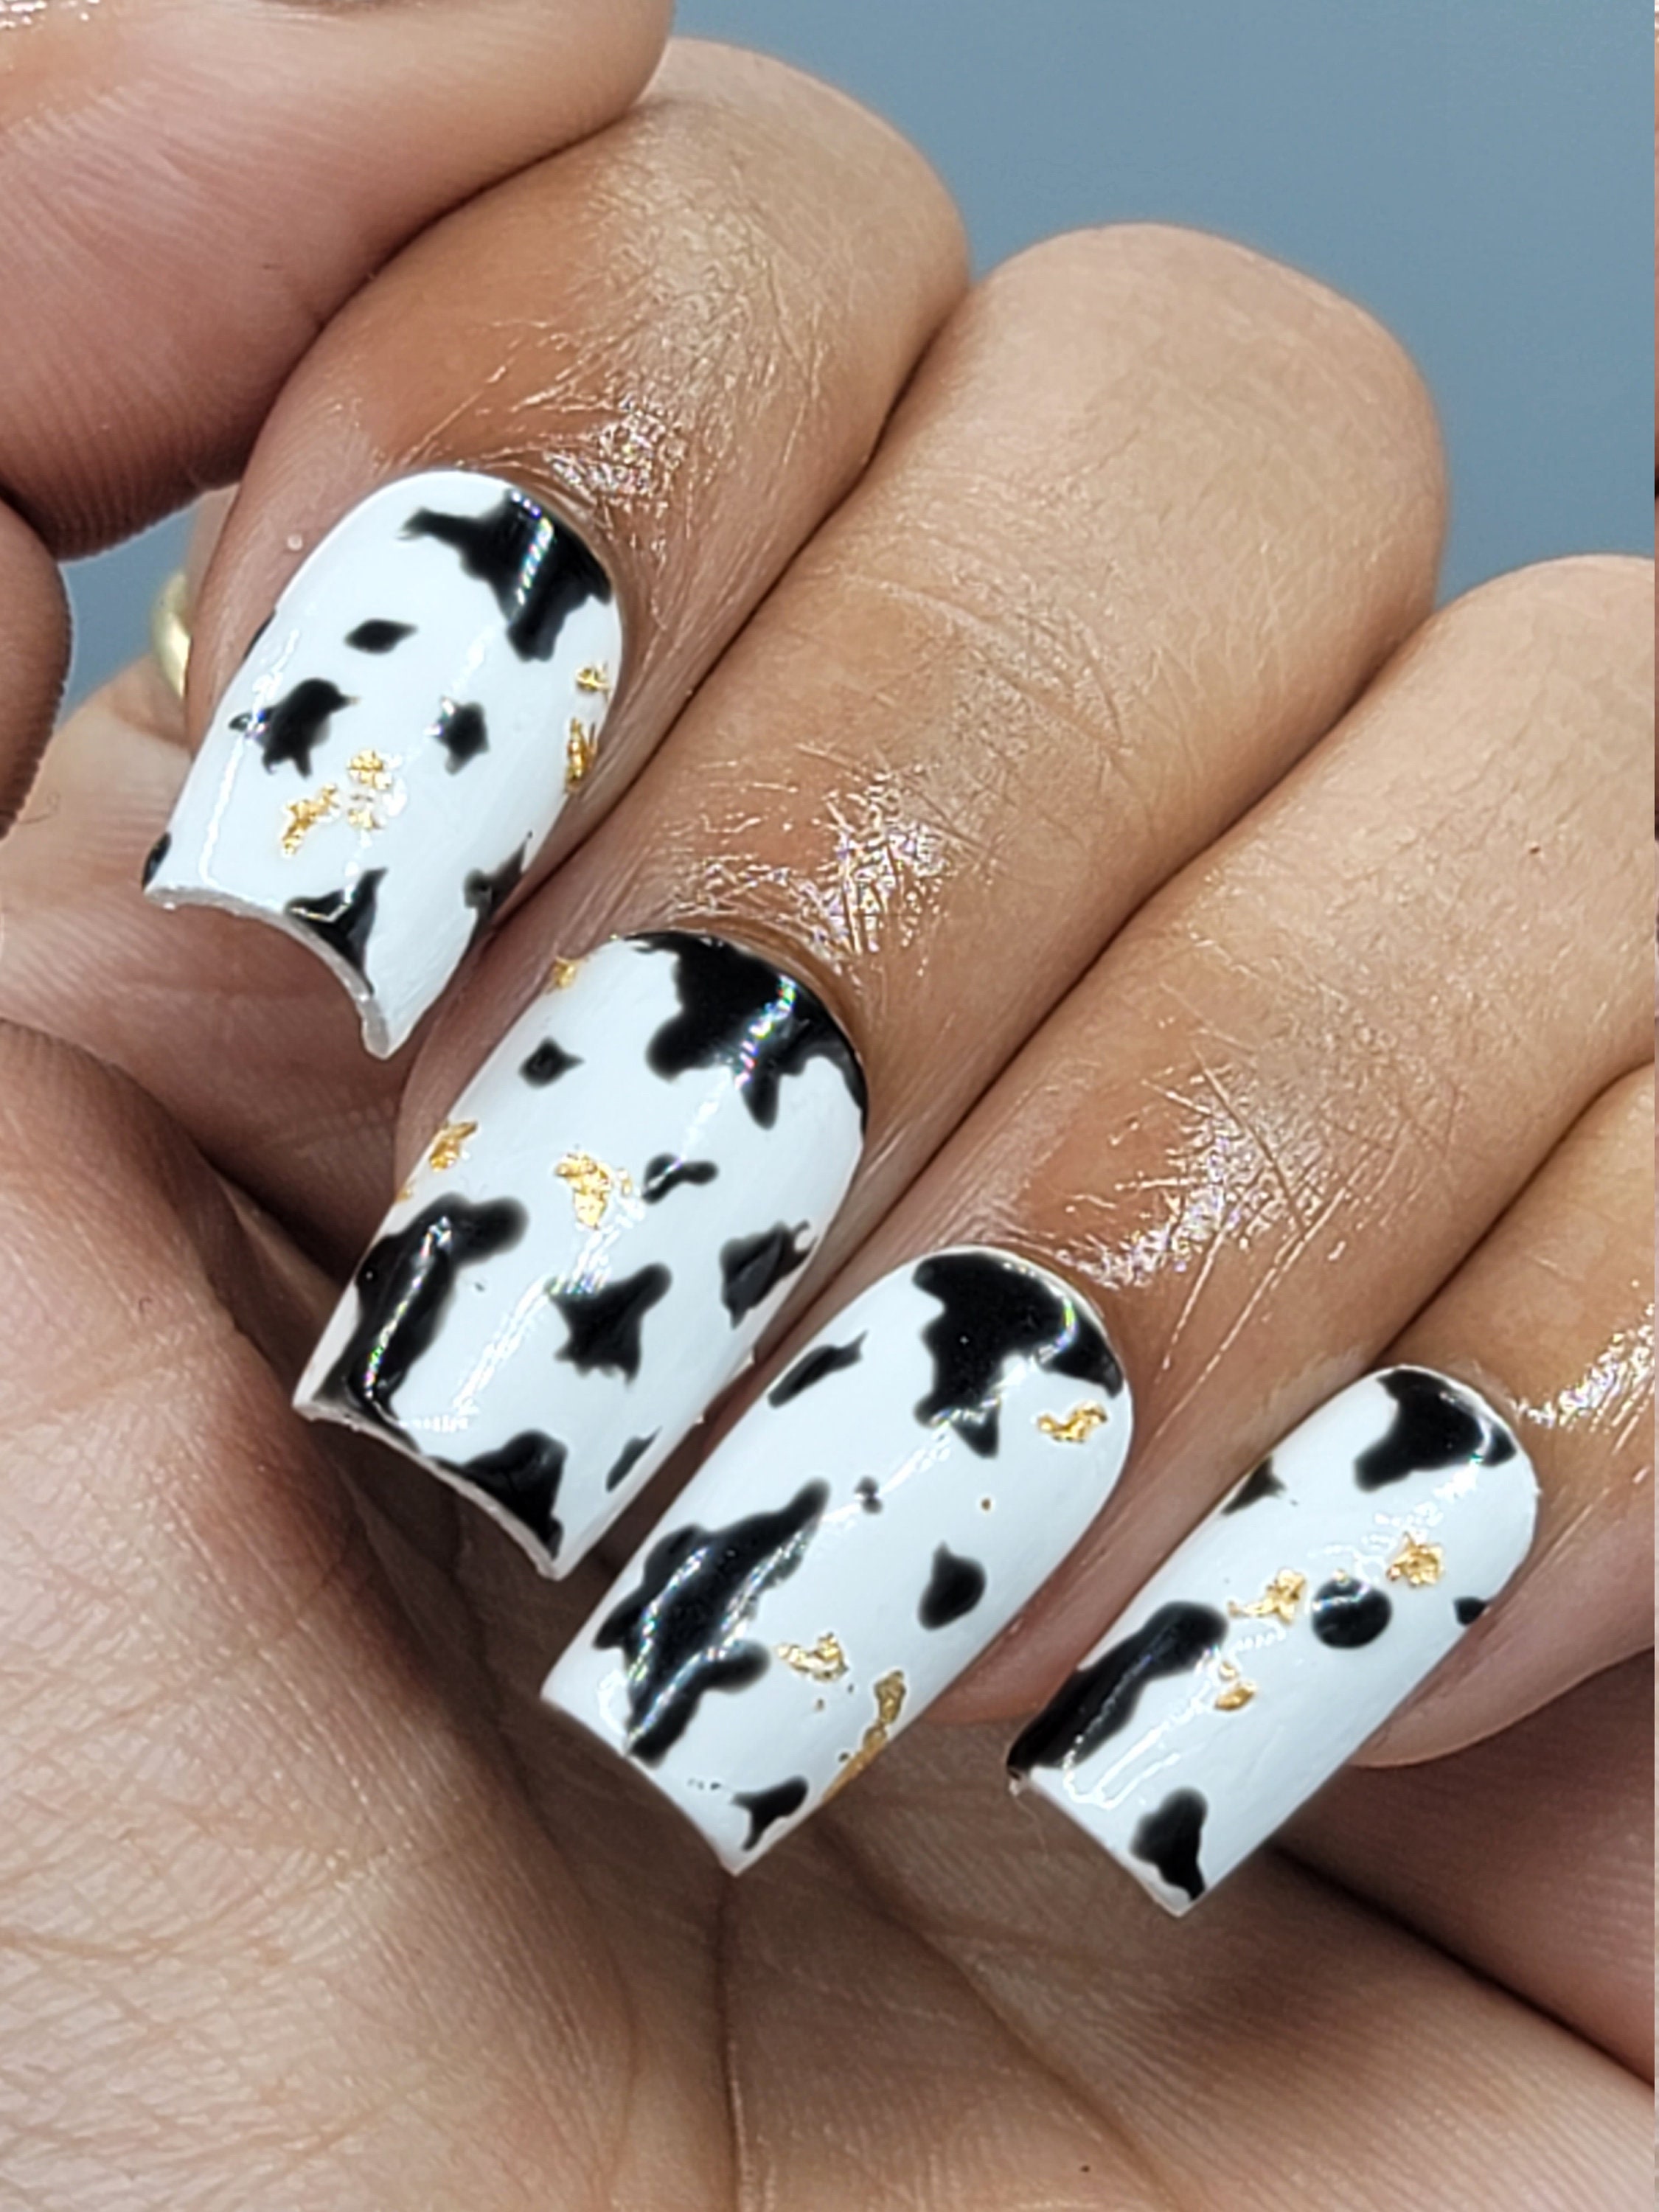 COW PRINT NAILS | Country acrylic nails, Boho nails, Cow nails